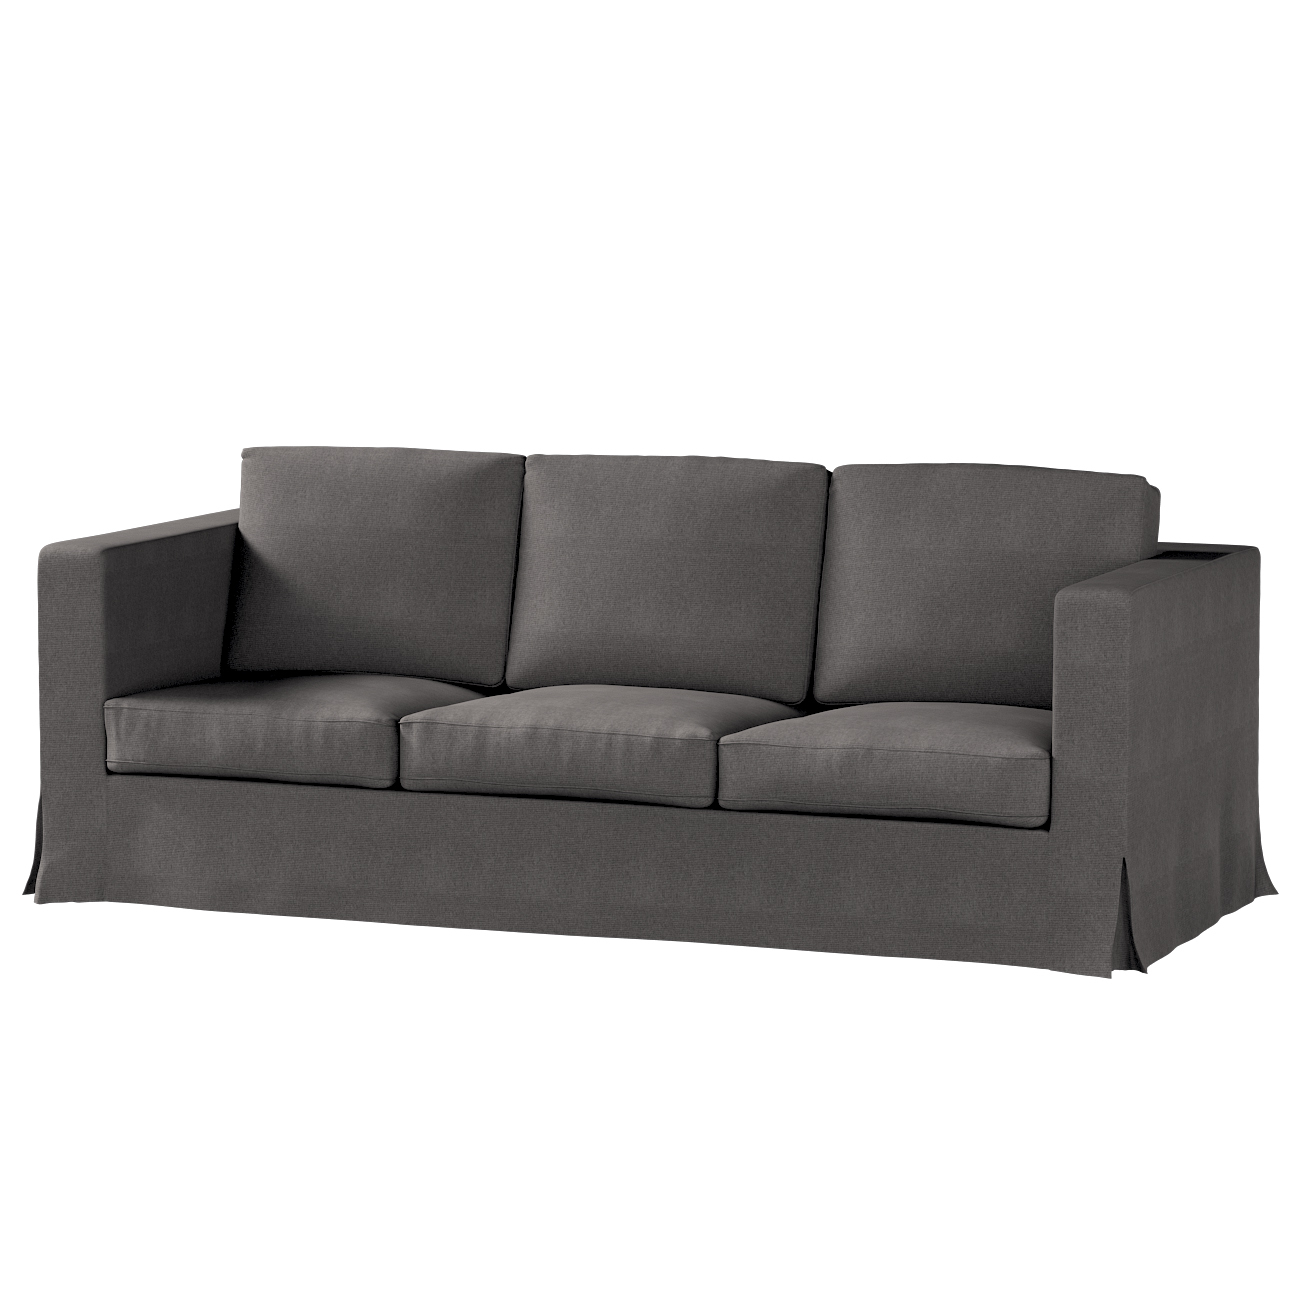 Bezug für Karlanda 3-Sitzer Sofa nicht ausklappbar, lang, dunkelgrau, Bezug günstig online kaufen